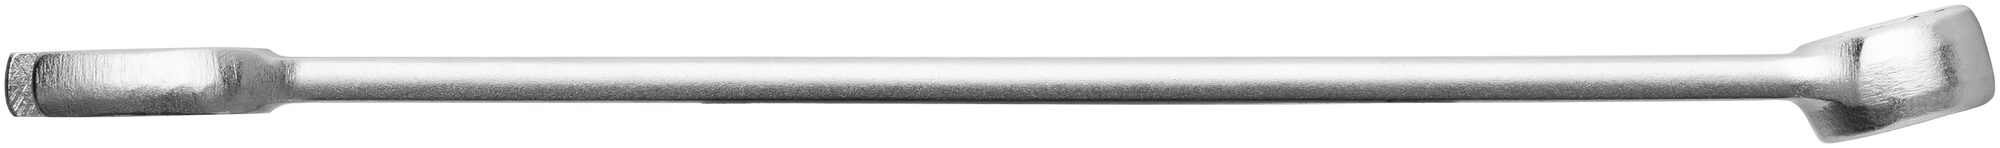 HAZET Ring-Maulschlüssel 600N-12 · Außen Doppel-Sechskant-Tractionsprofil · 12 mm